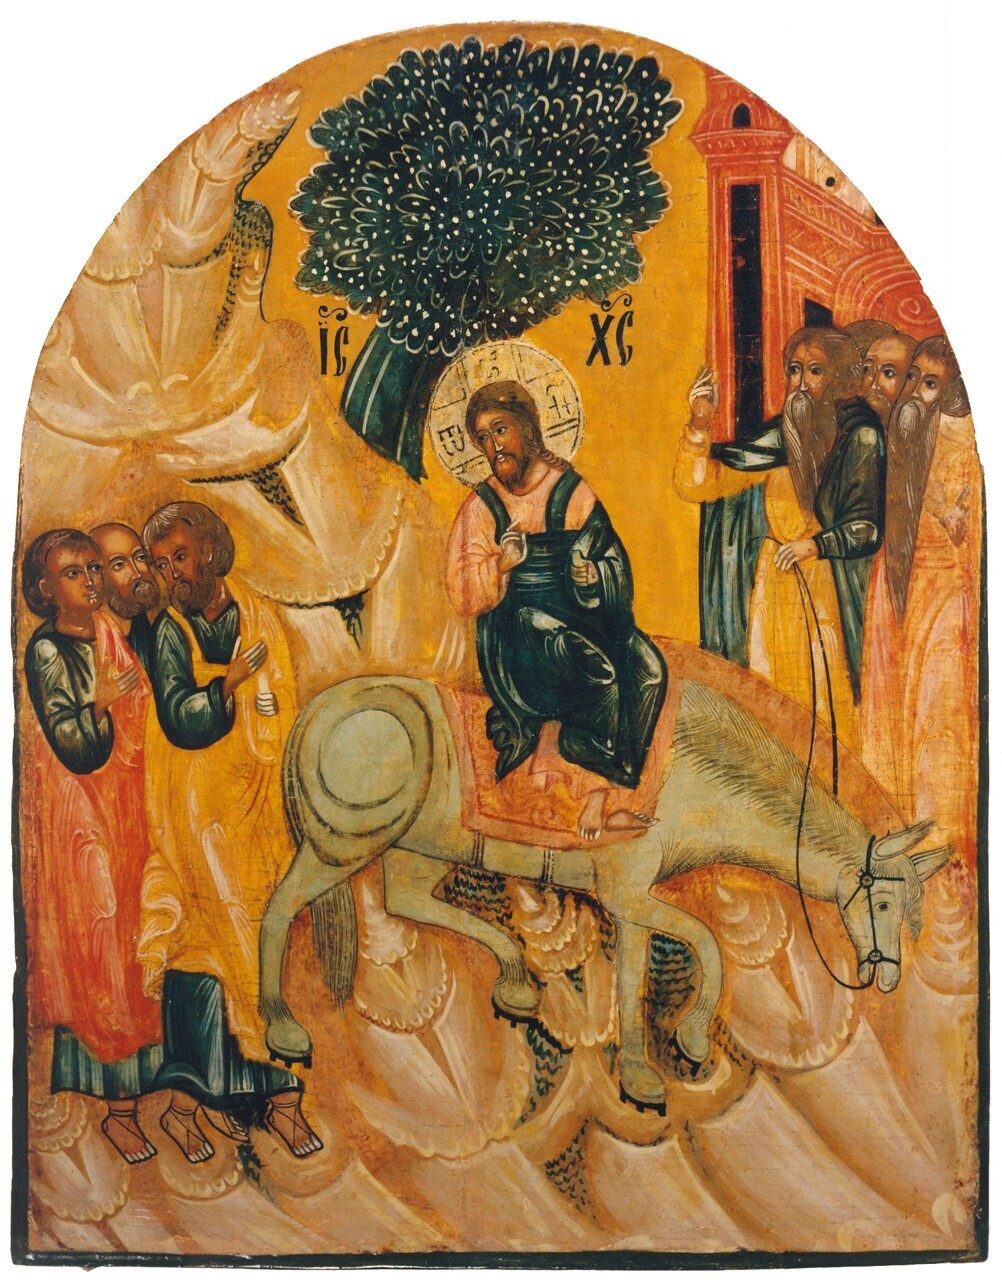 The Entry into Jerusalem